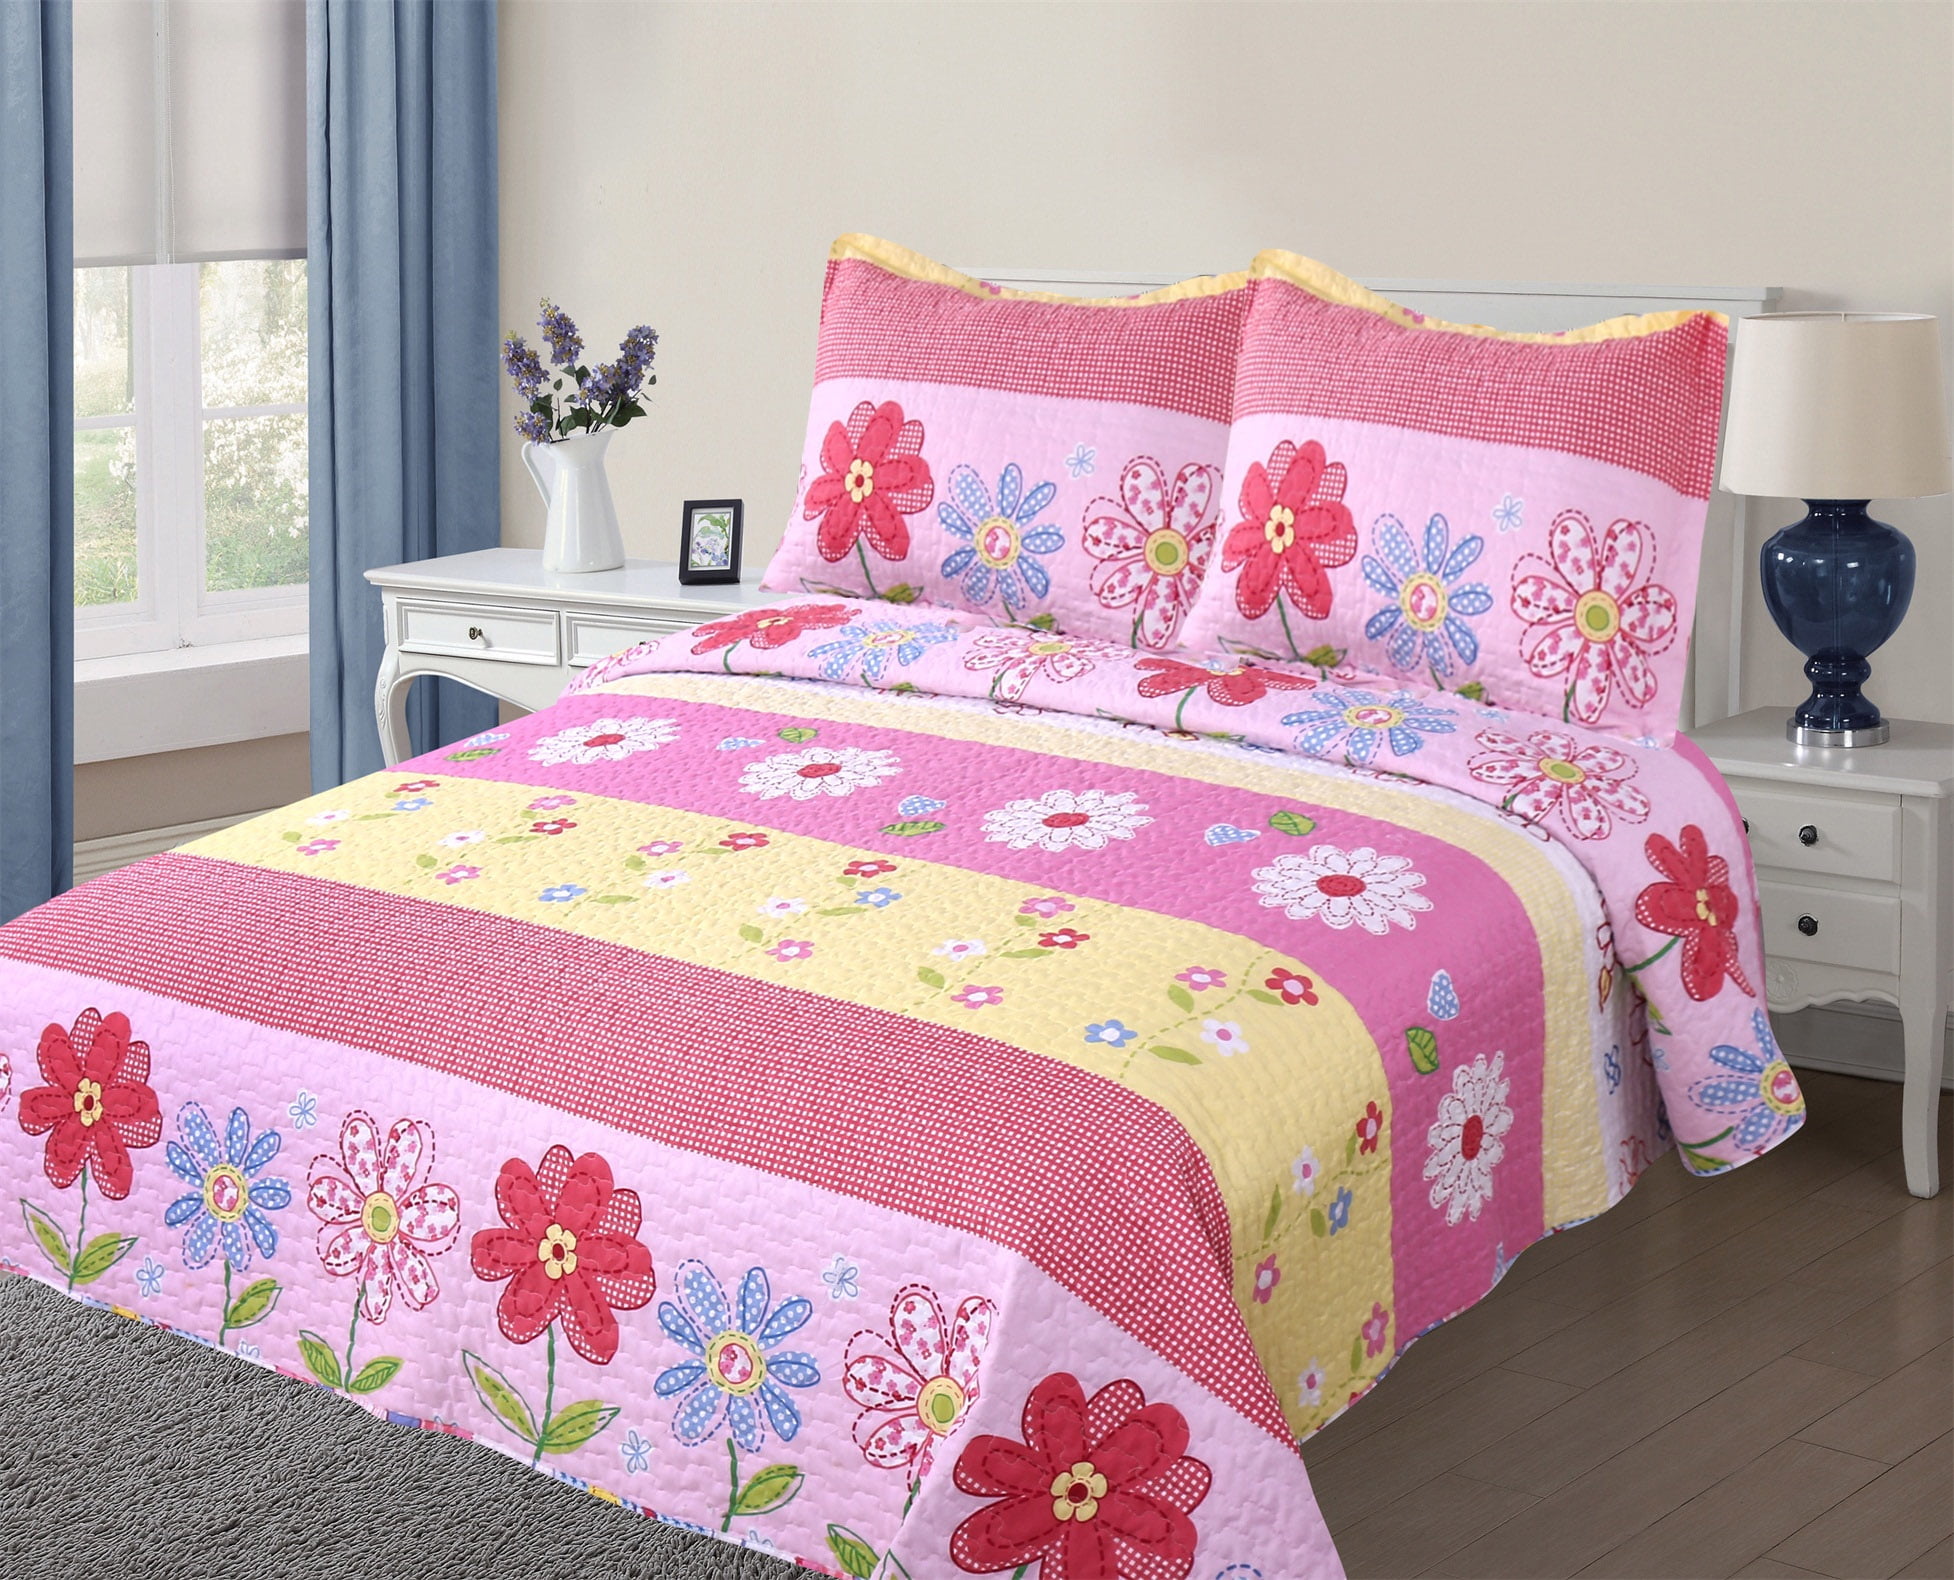 Golden Linens Full Size 1 Quilt, 2 Shams Pink Light Pink Yellow Floral Kids Teens/Girls Quilt Bedspread 06-16 Girls